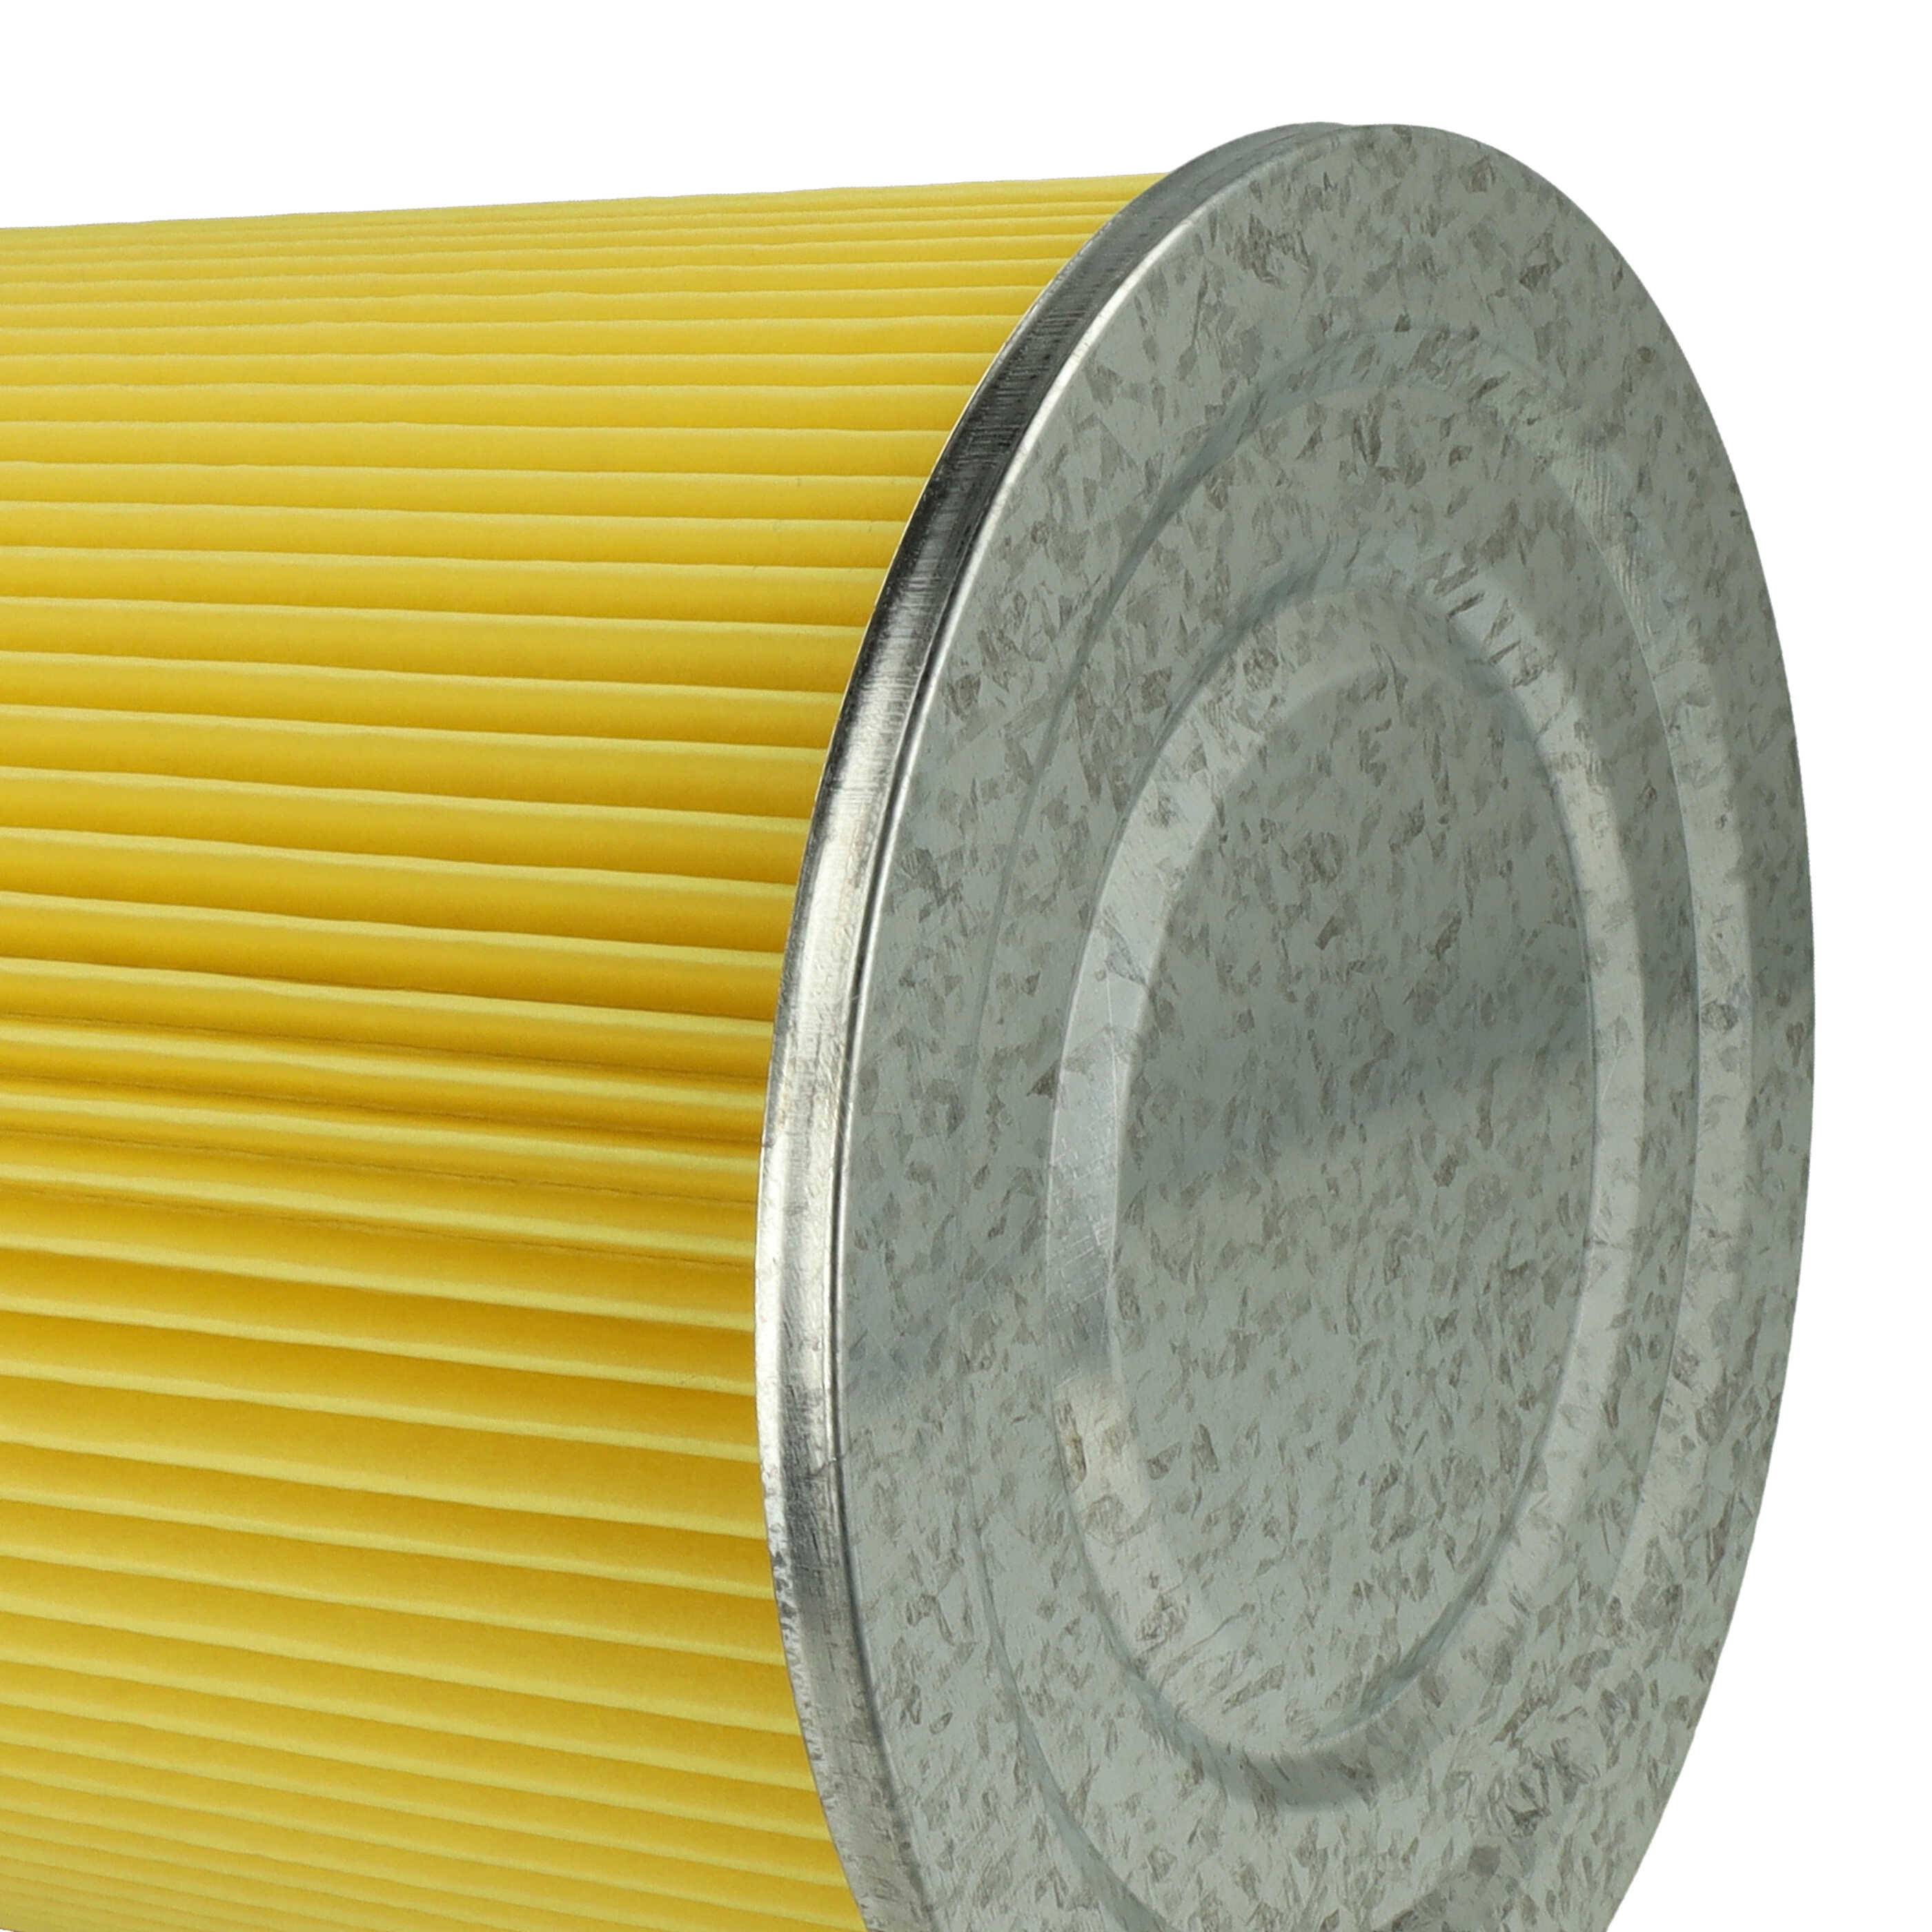 Filtro sostituisce Thomas 787115, 195118 per aspirapolvere - filtro cartucce, nero / giallo